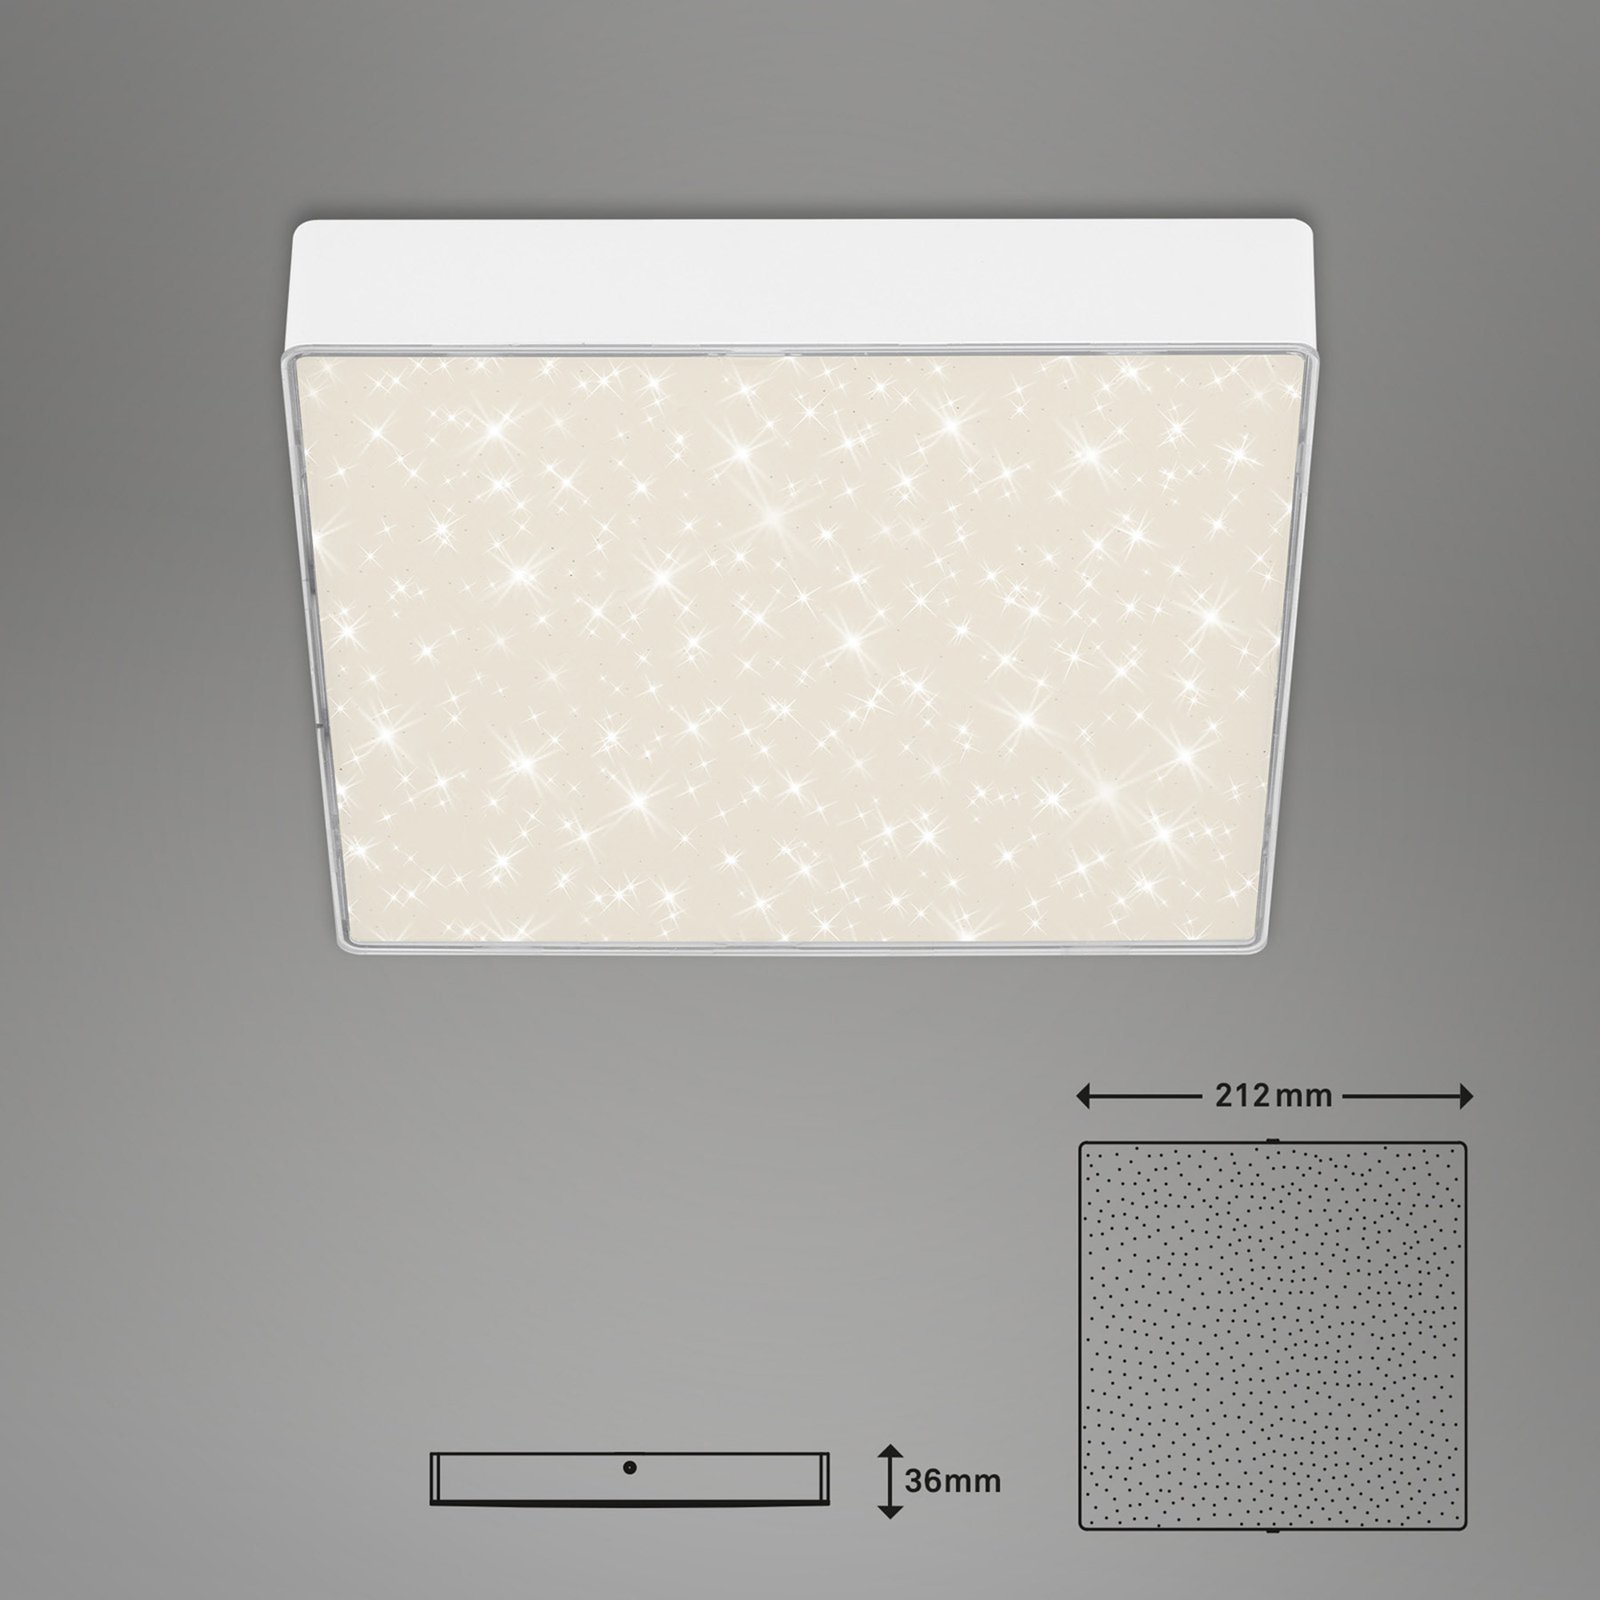 LED-Deckenlampe Flame Star, 21,2 x 21,2 cm weiß